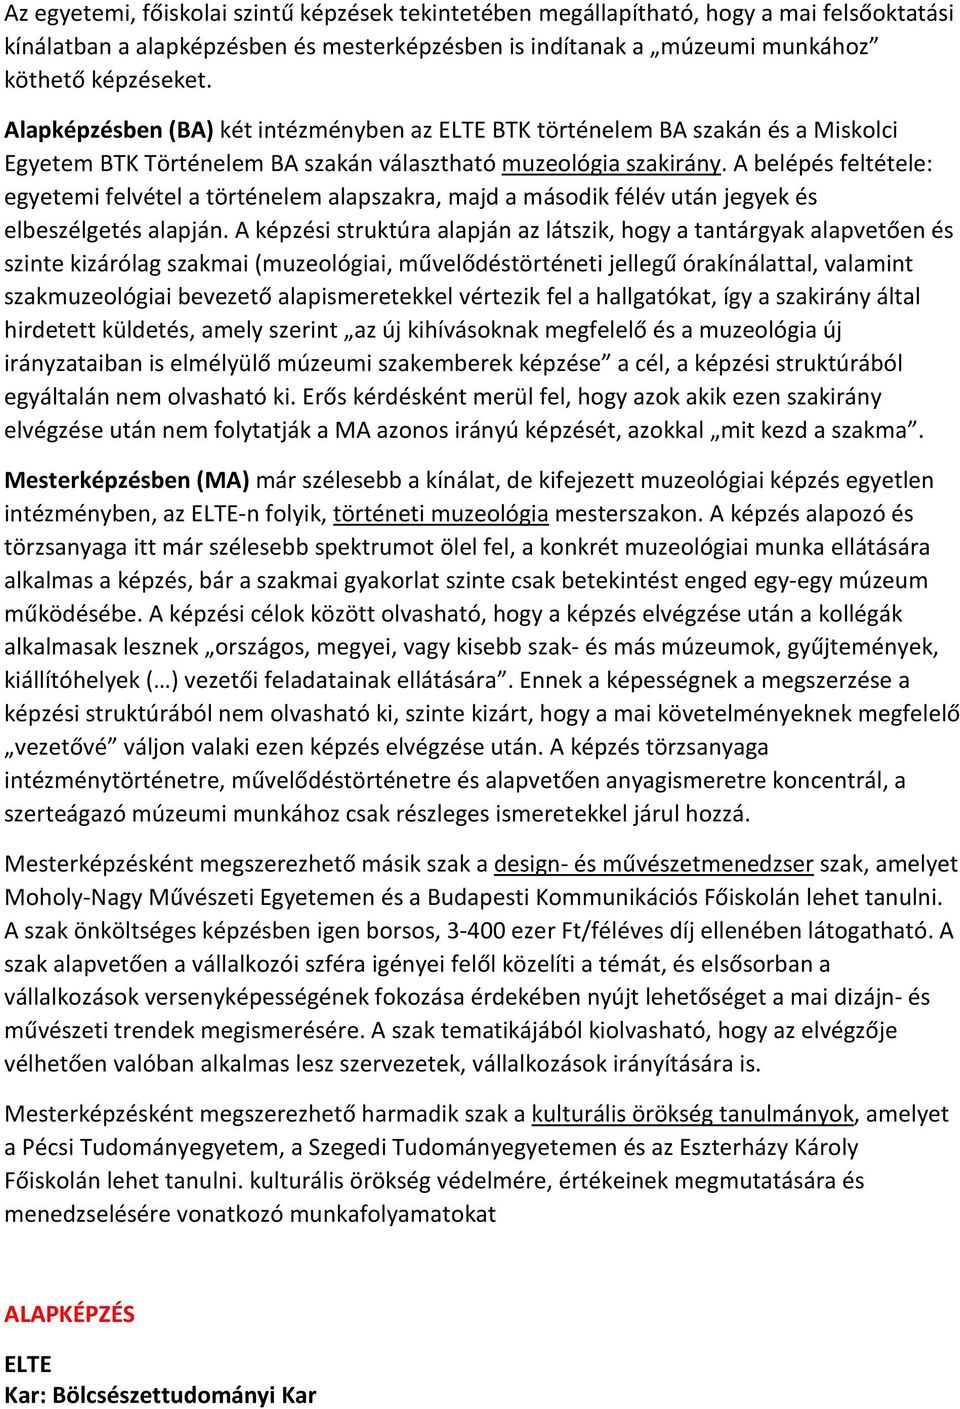 ALAPKÉPZÉS. ELTE Kar: Bölcsészettudományi Kar - PDF Ingyenes letöltés